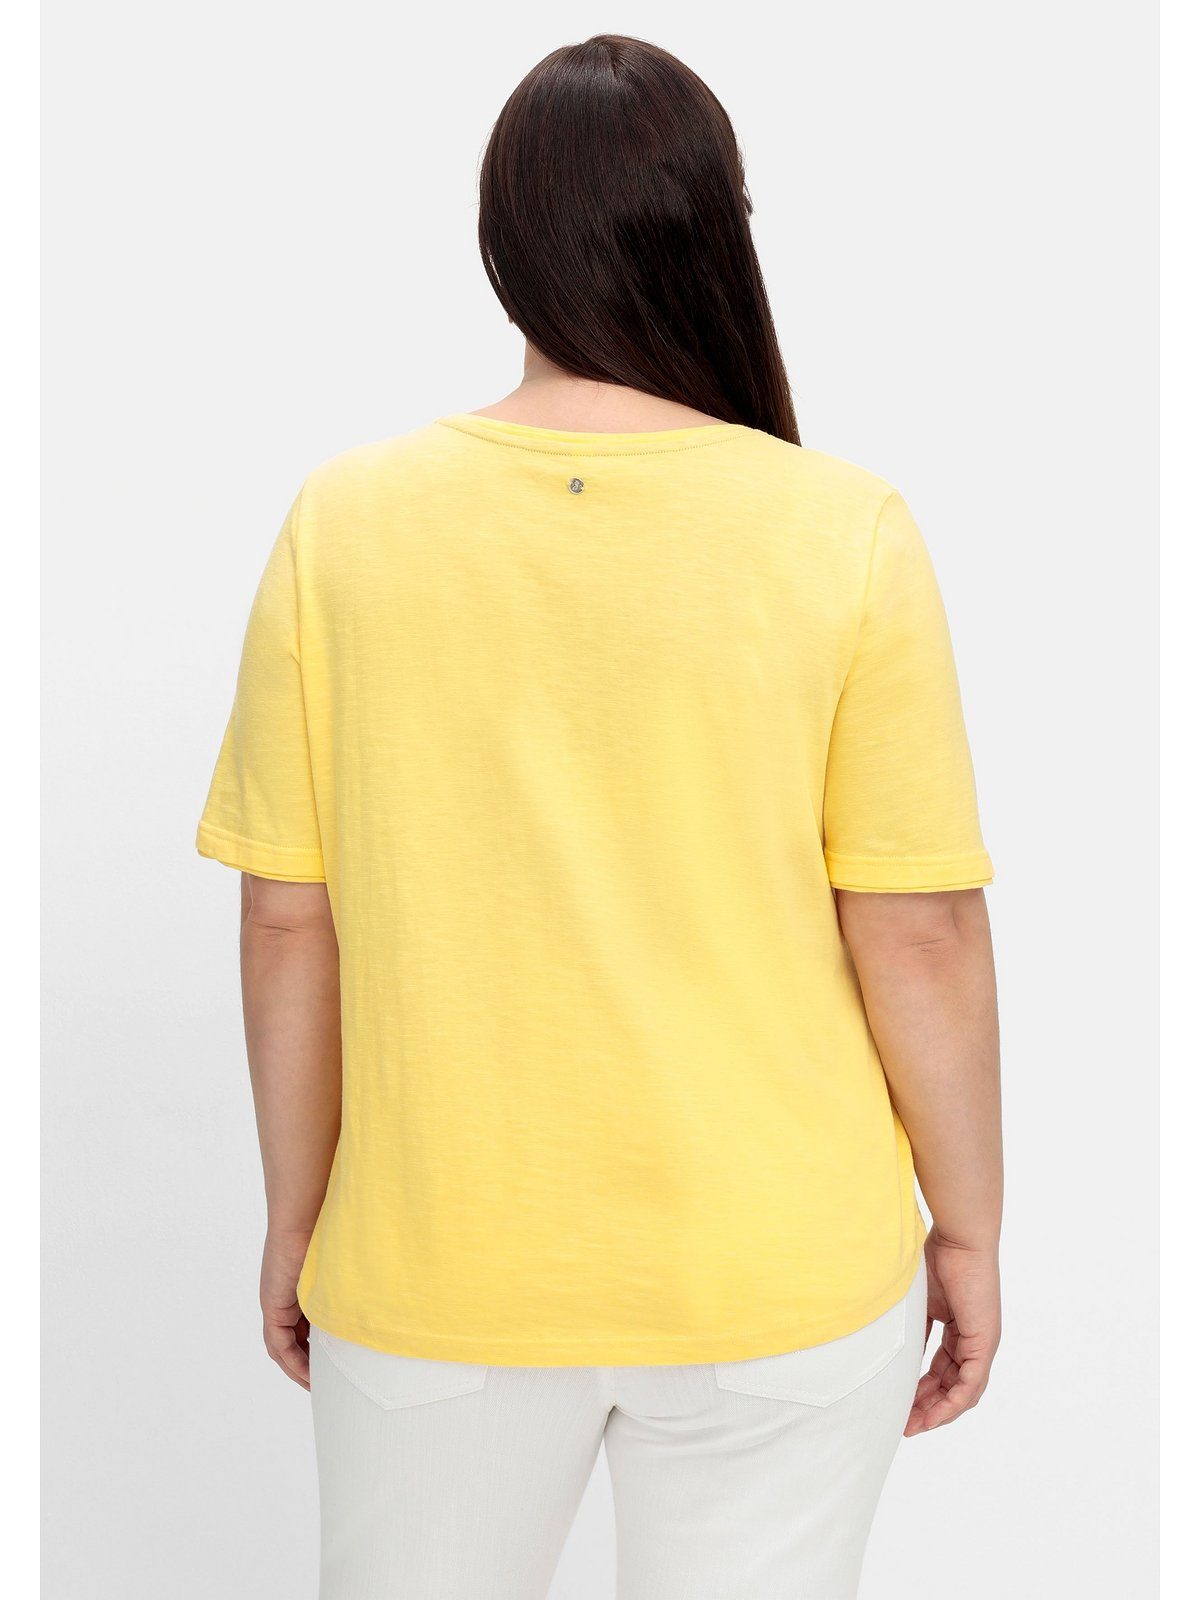 Sheego T-Shirt mit gerundetem Flammgarn, Saum aus Größen Große gelb